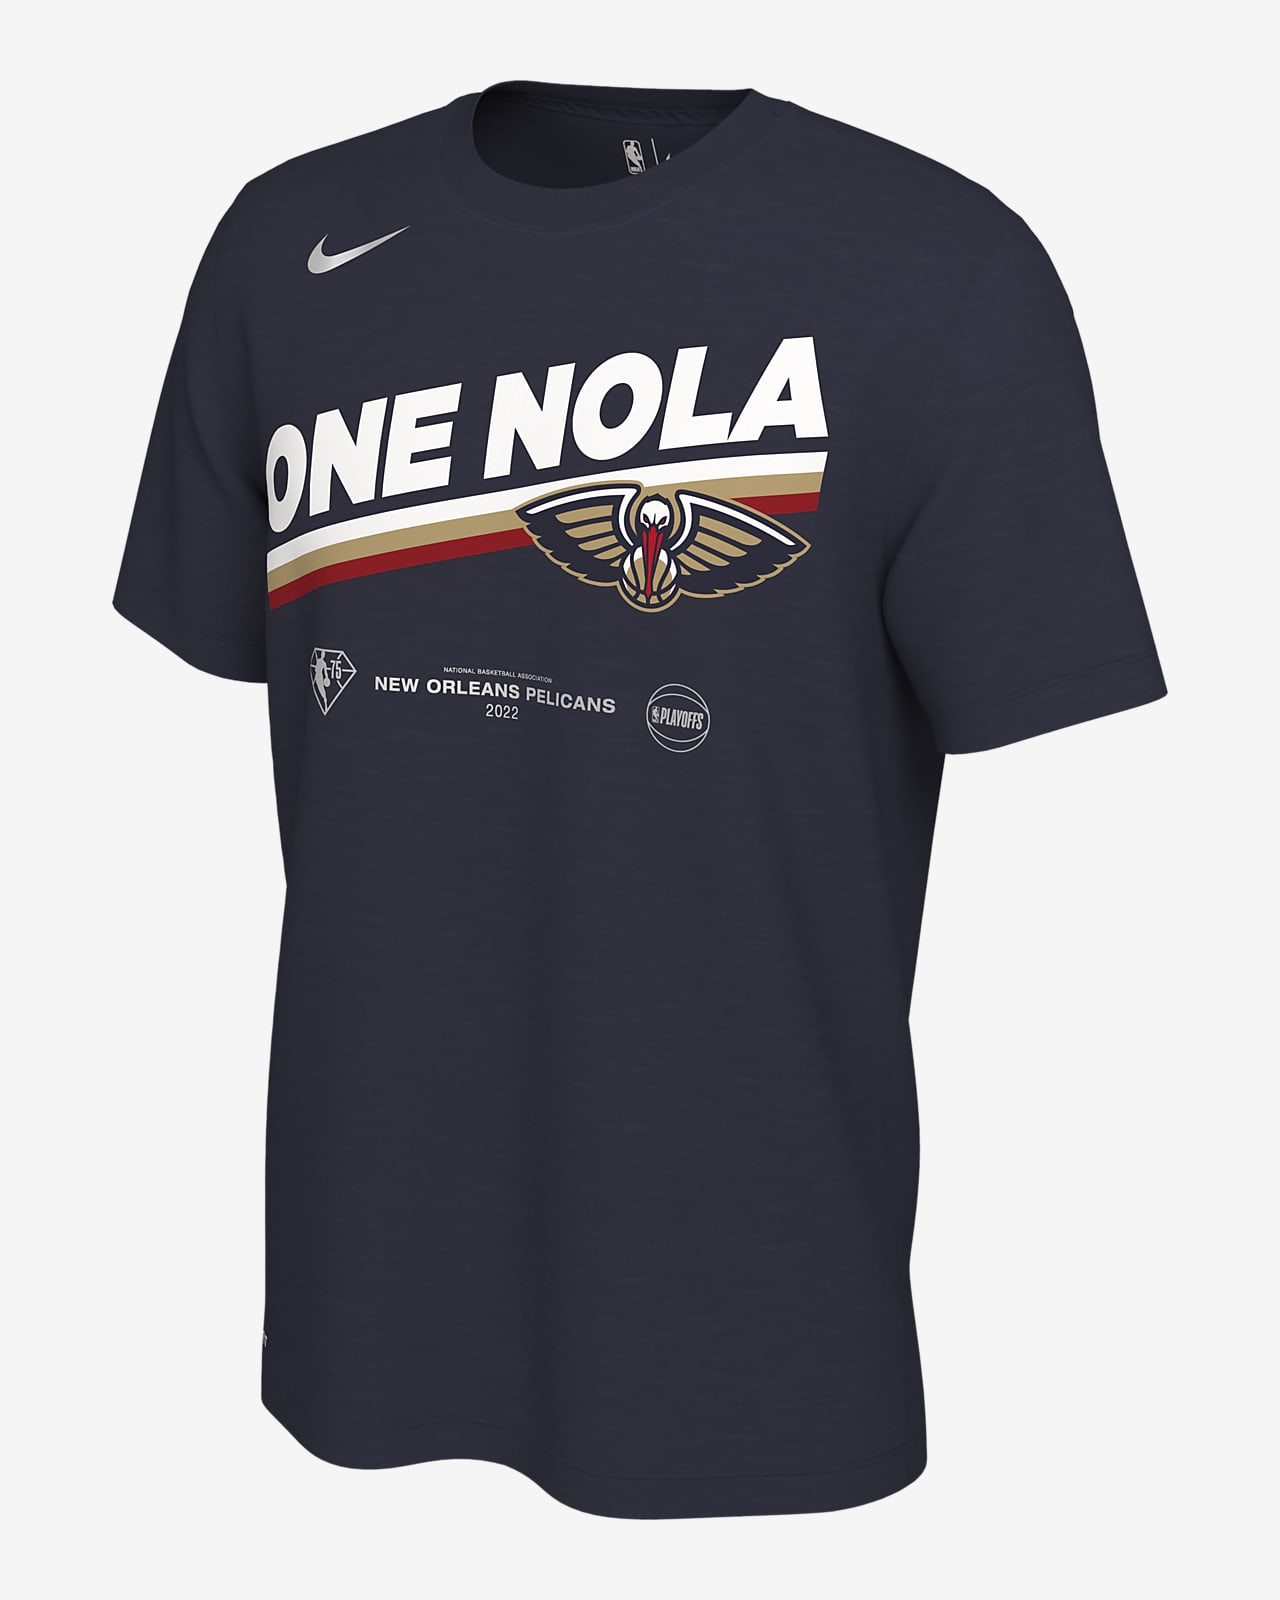 Playera Nike NBA para hombre New Orleans Pelicans